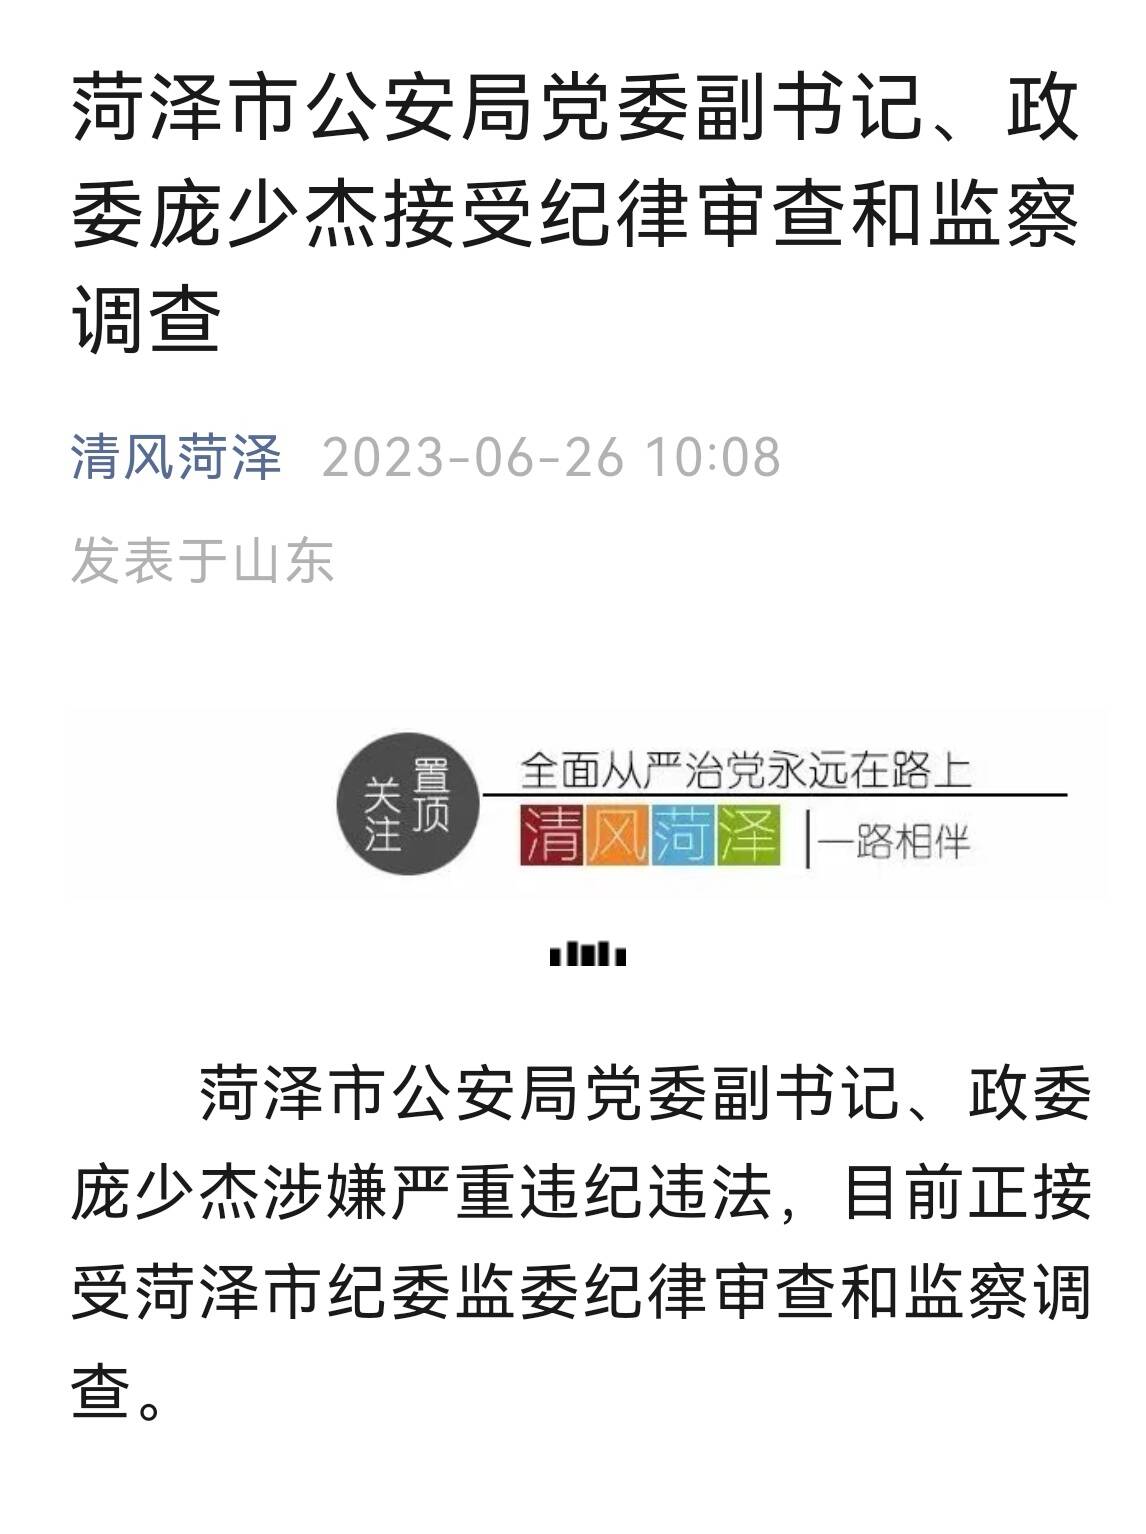 菏泽市公安局党委副书记、政委庞少杰接受纪律审查和监察调查